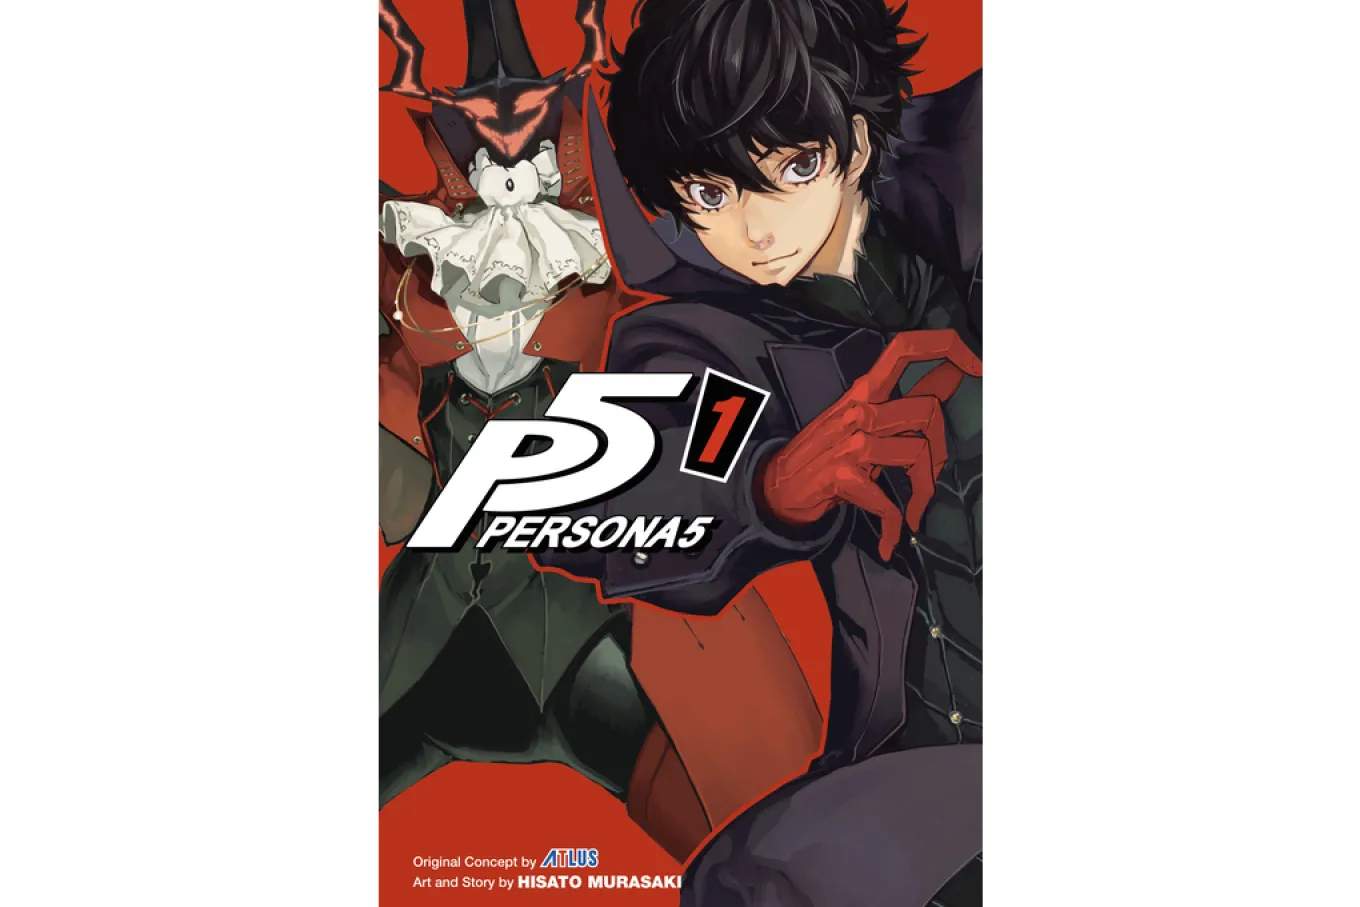 Persona 5 cover